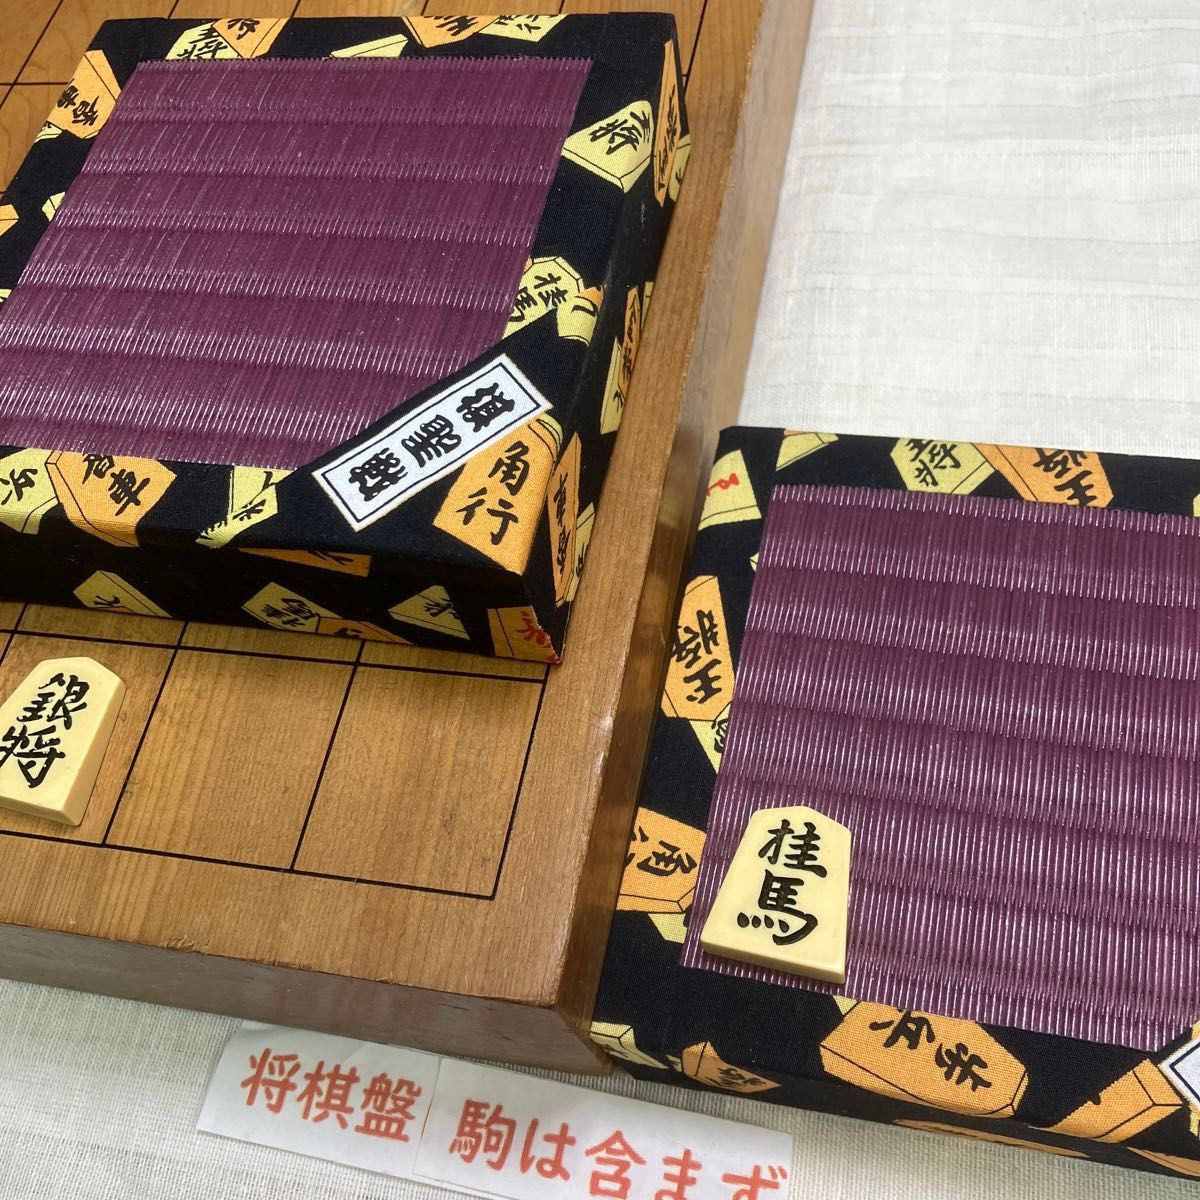 畳はえび茶色の新作です。とても洒落た畳に将棋駒柄のへり、とても鮮やかな駒台です。駒24-8